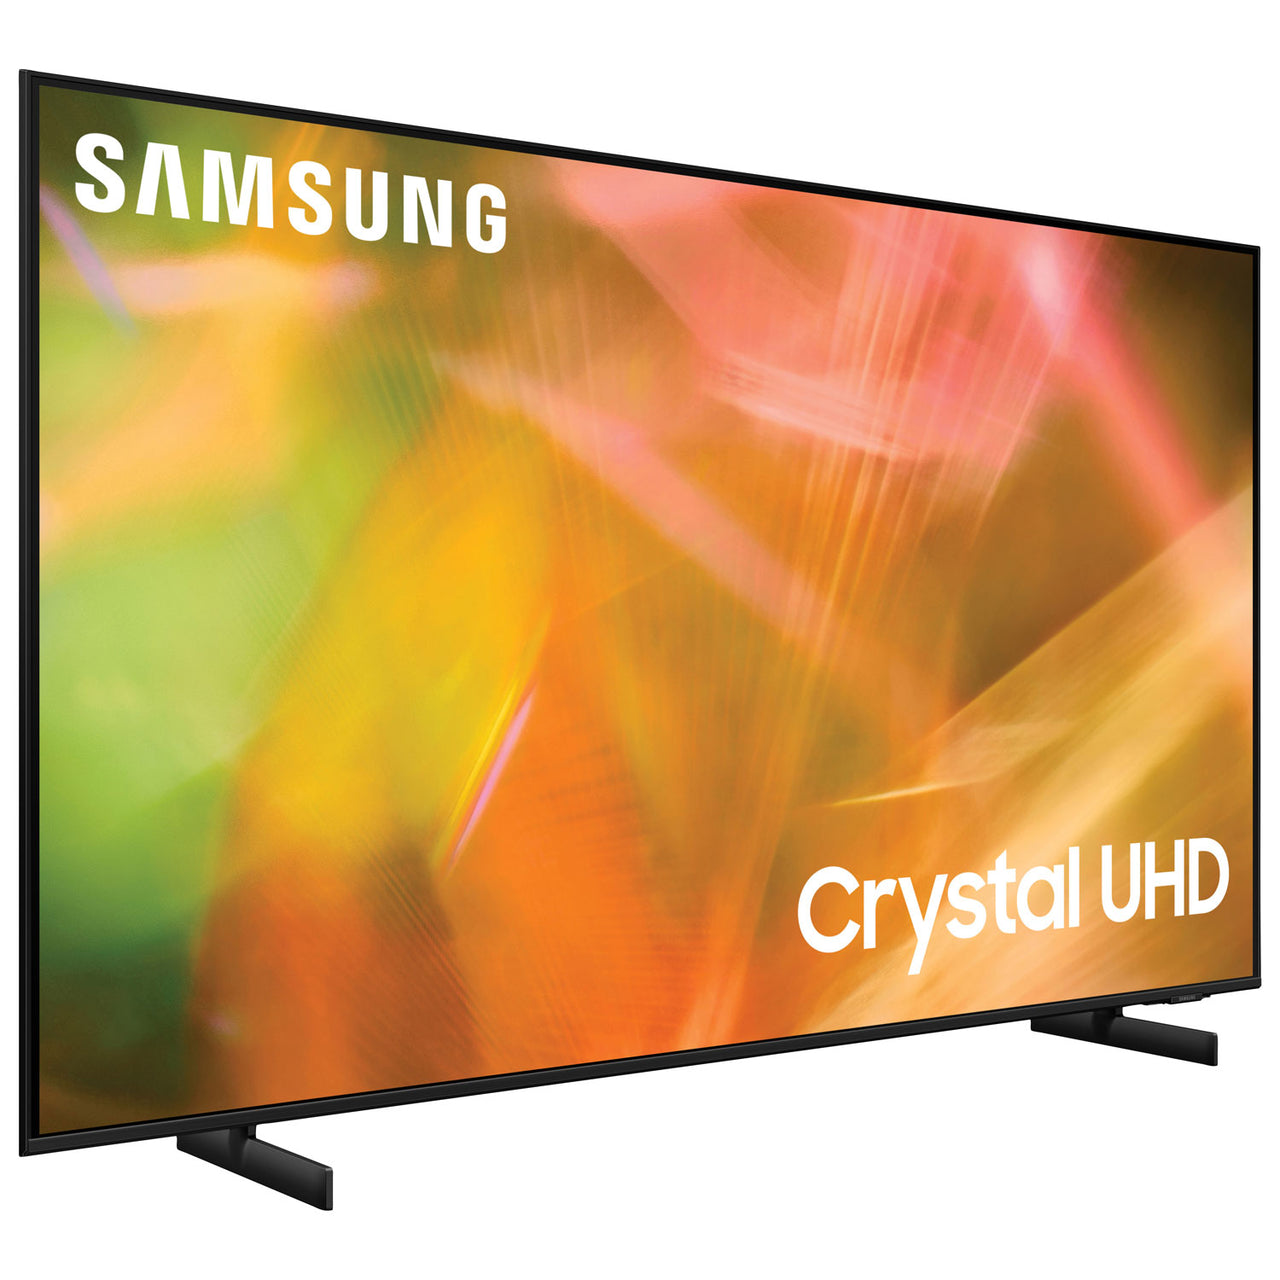 Samsung 55" 4K UHD HDR LED Tizen Smart TV (UN55AU8000FXZC) - 2021